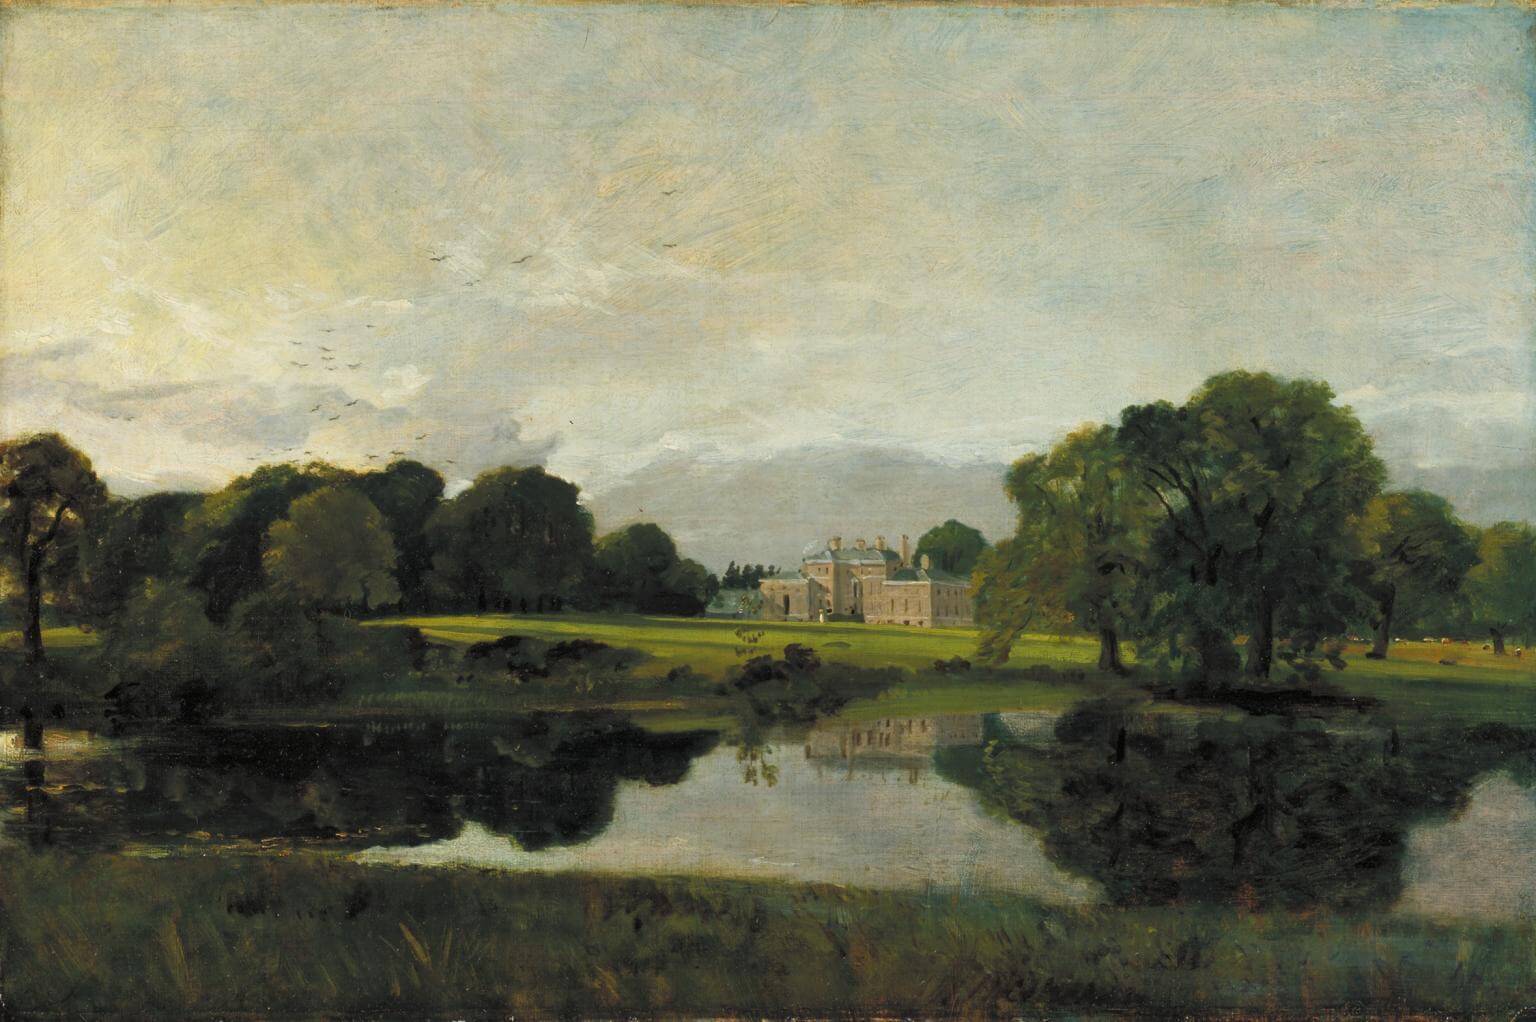 La pittura di John Constable: alla ricerca della verità nell'arte